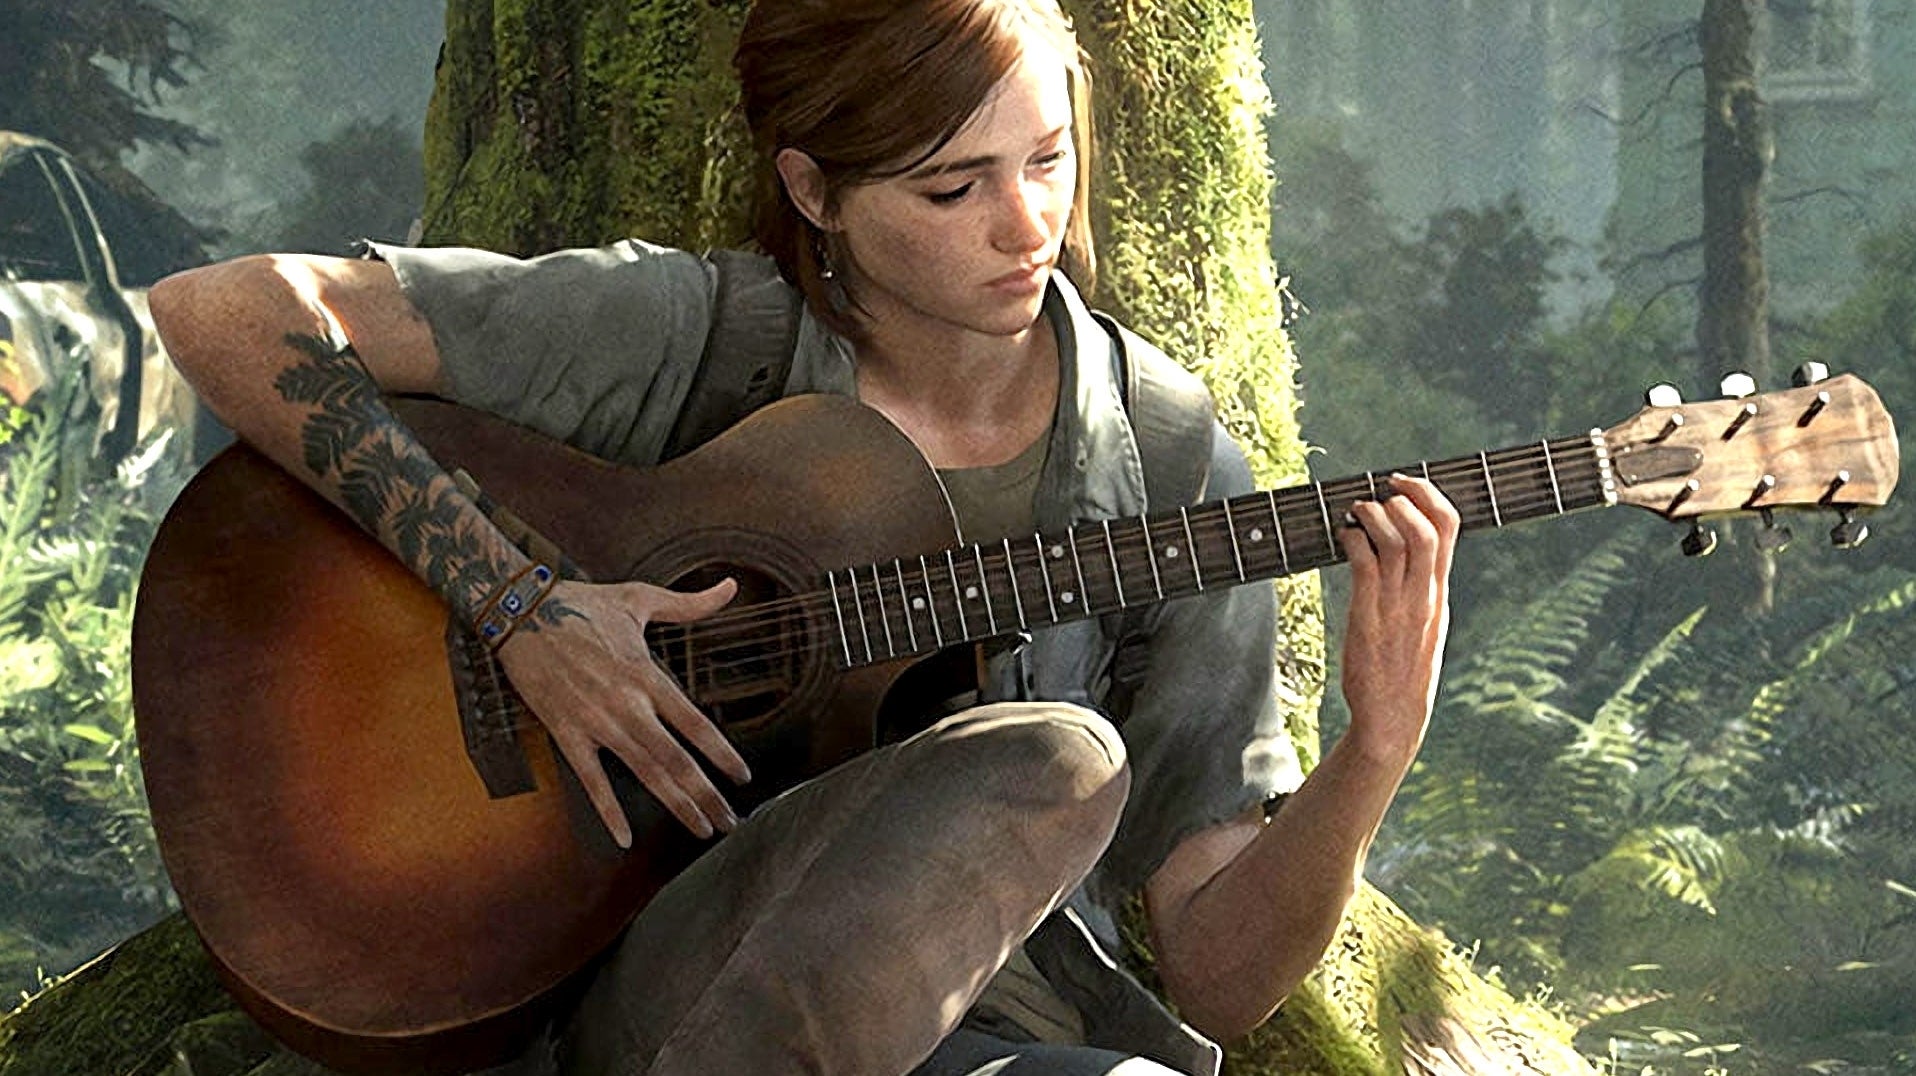 Bilder zu The Last of Us Part 2 läuft jetzt mit 60fps auf der PS5! Große Freude!